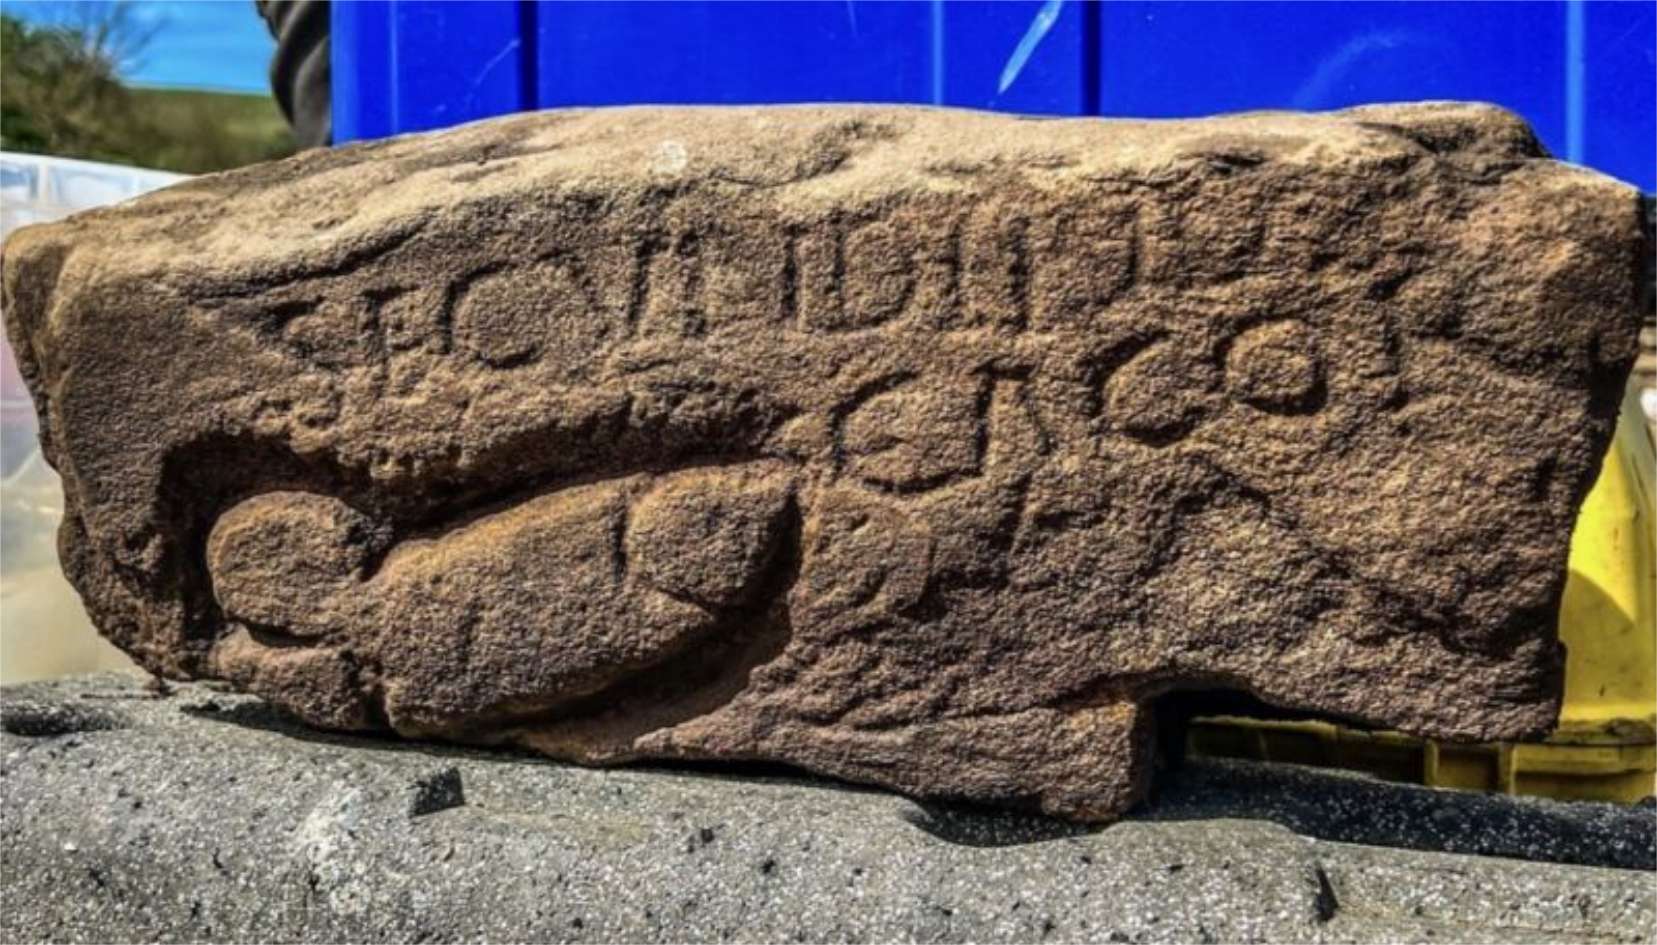 La pierre gravée de l'inscription « Secundinus cacor » et du dessin d'un pénis laisse peu de place au doute quant à la qualité des relations entre l'auteur et le destinataire. © Vindolanda Charitable Trust